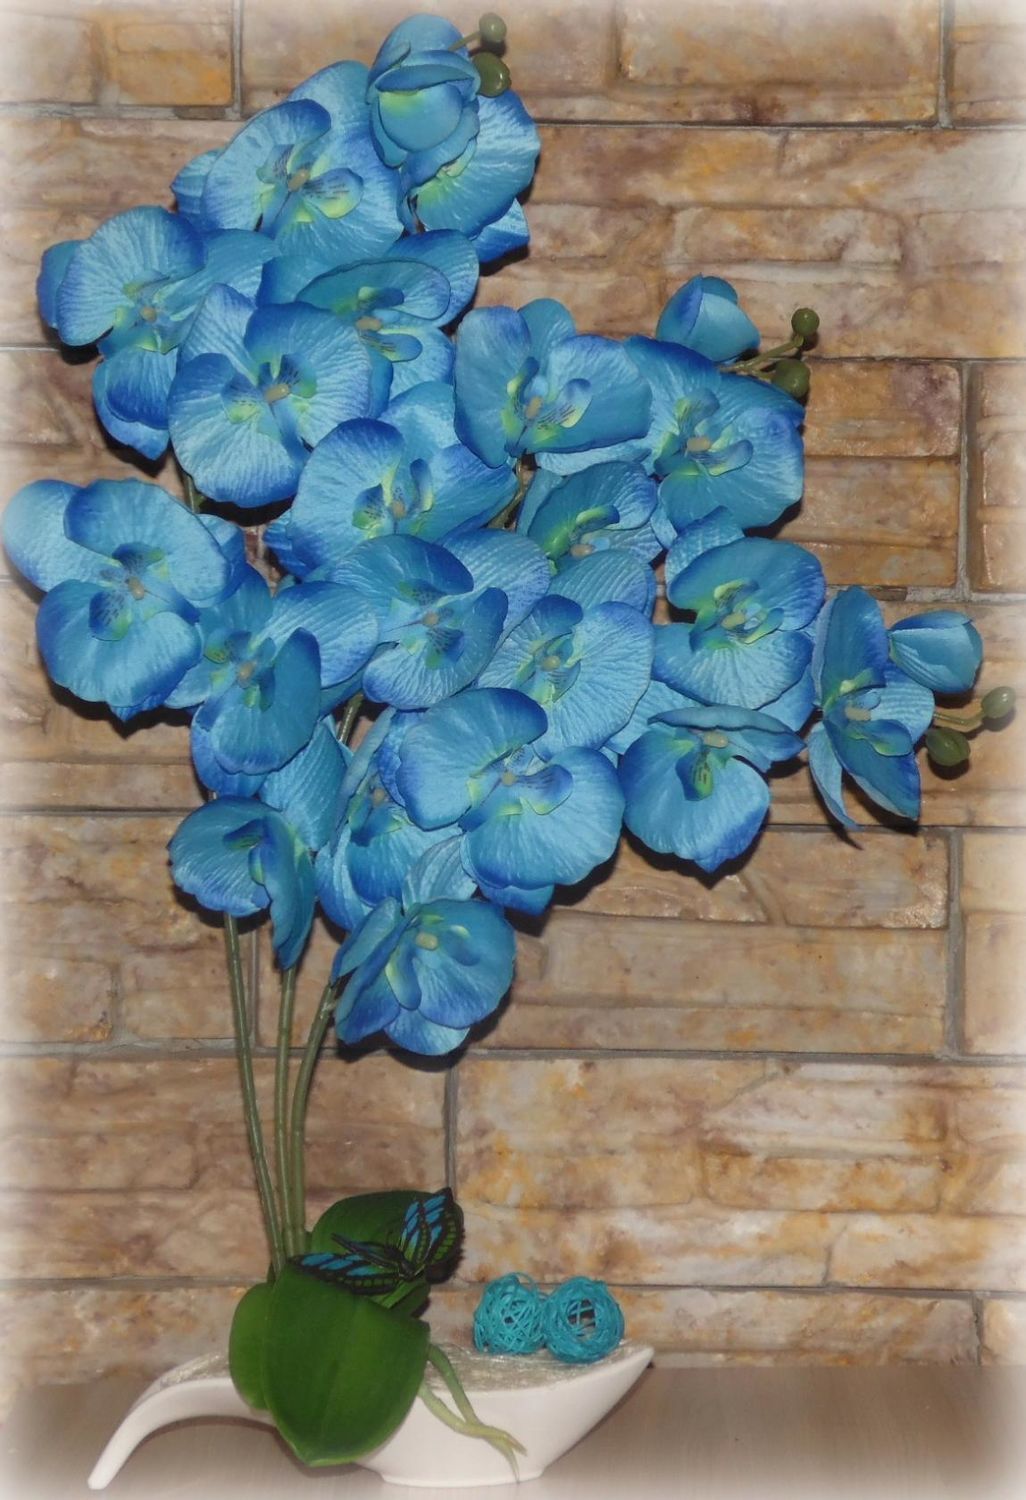 Фото №1 к отзыву покупателя Совёнок RU о товаре Интерьерные орхидеи